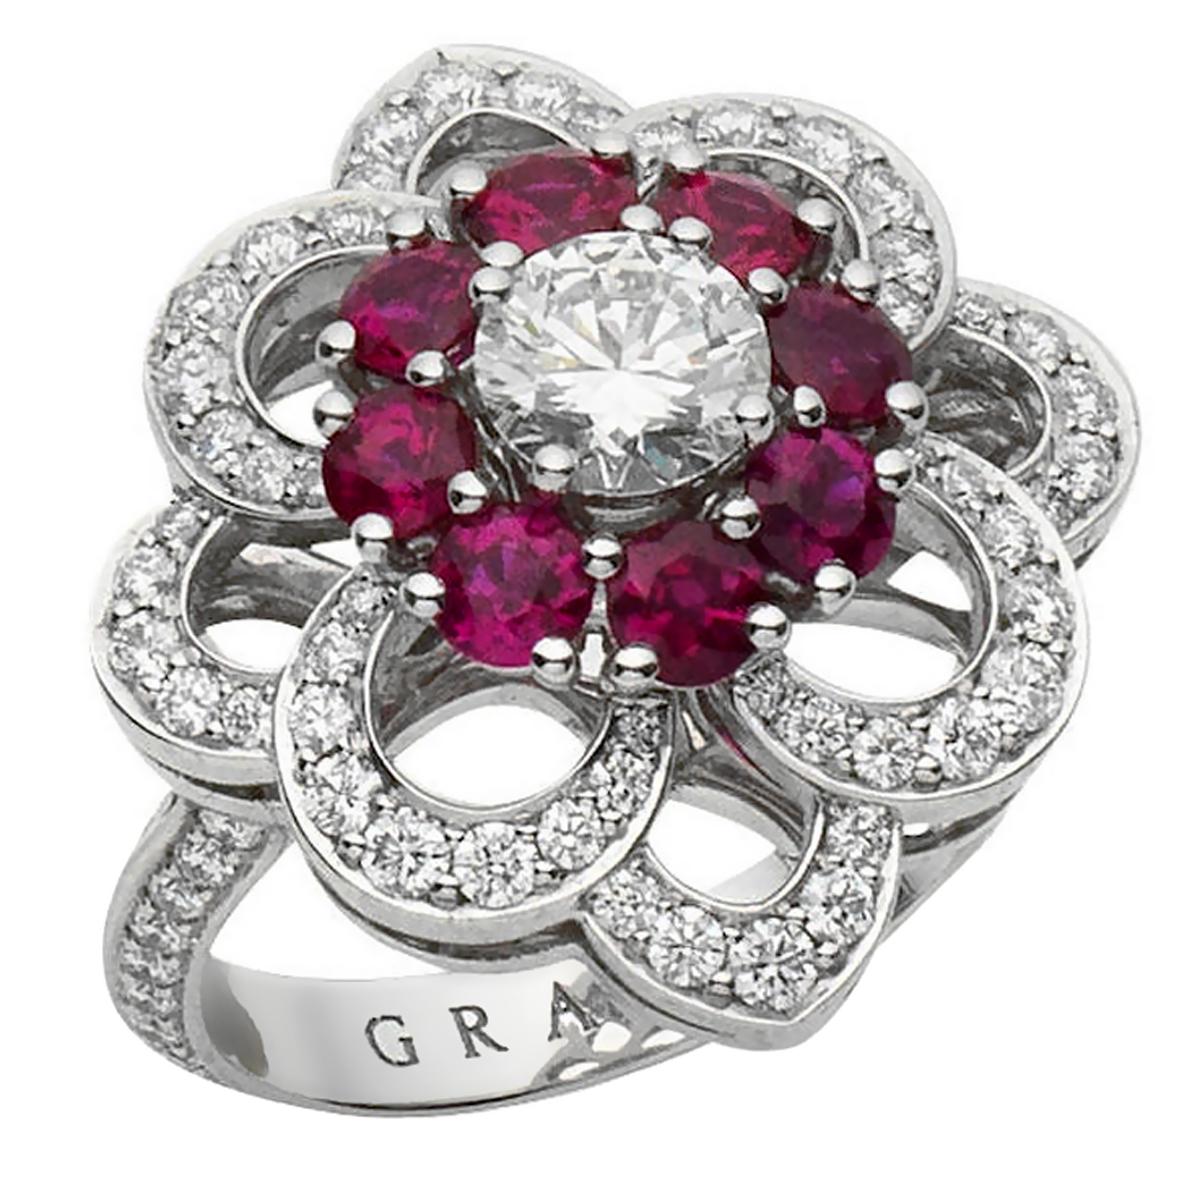 graff ruby ring